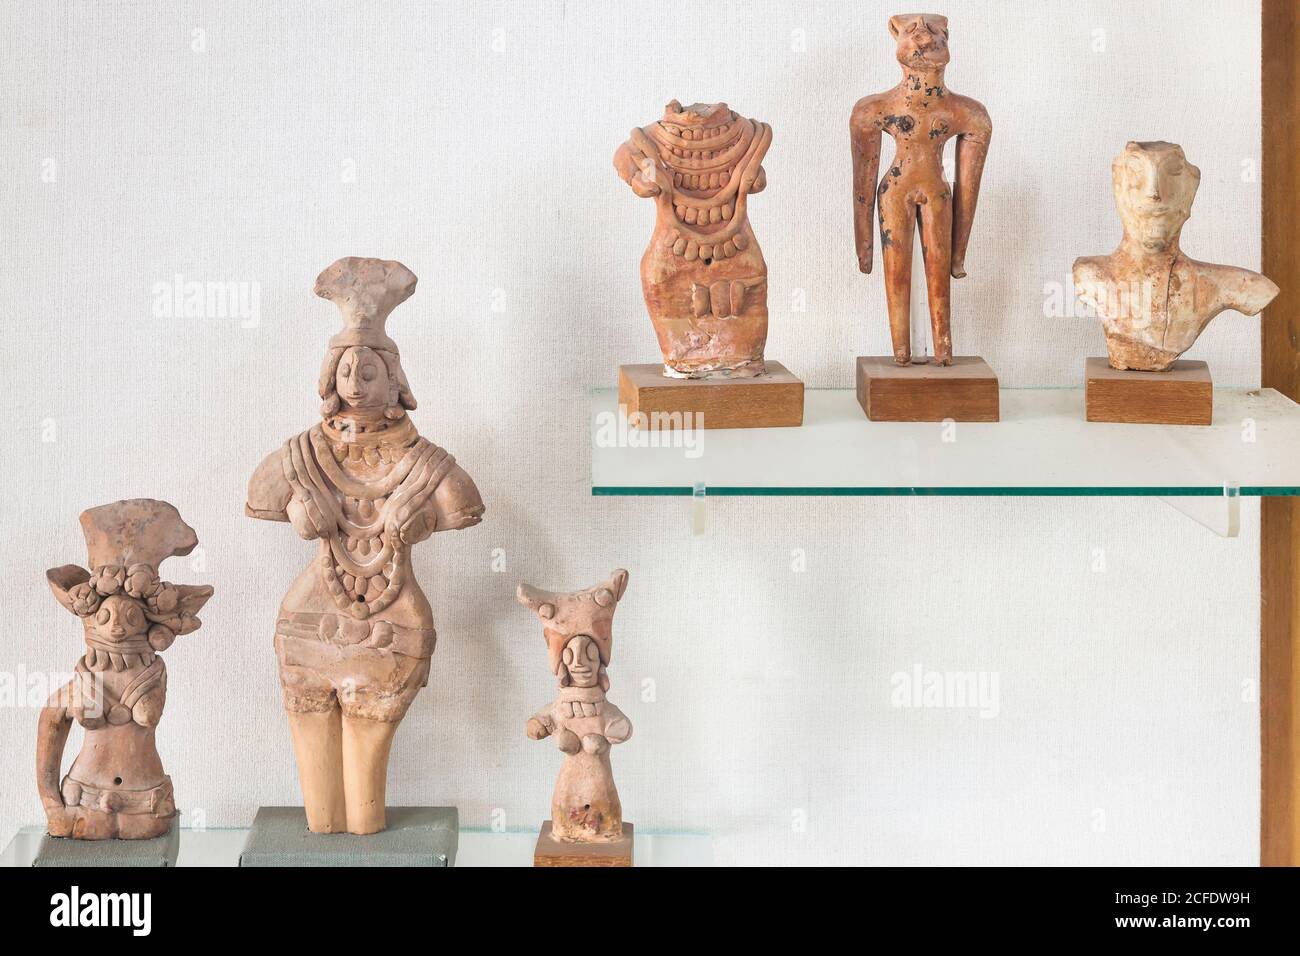 Ausstellung von alten Tonfiguren, Indus Valley Civilization Gallery, National Museum of Pakistan, Karachi, Sindh, Pakistan, Südasien, Asien Stockfoto